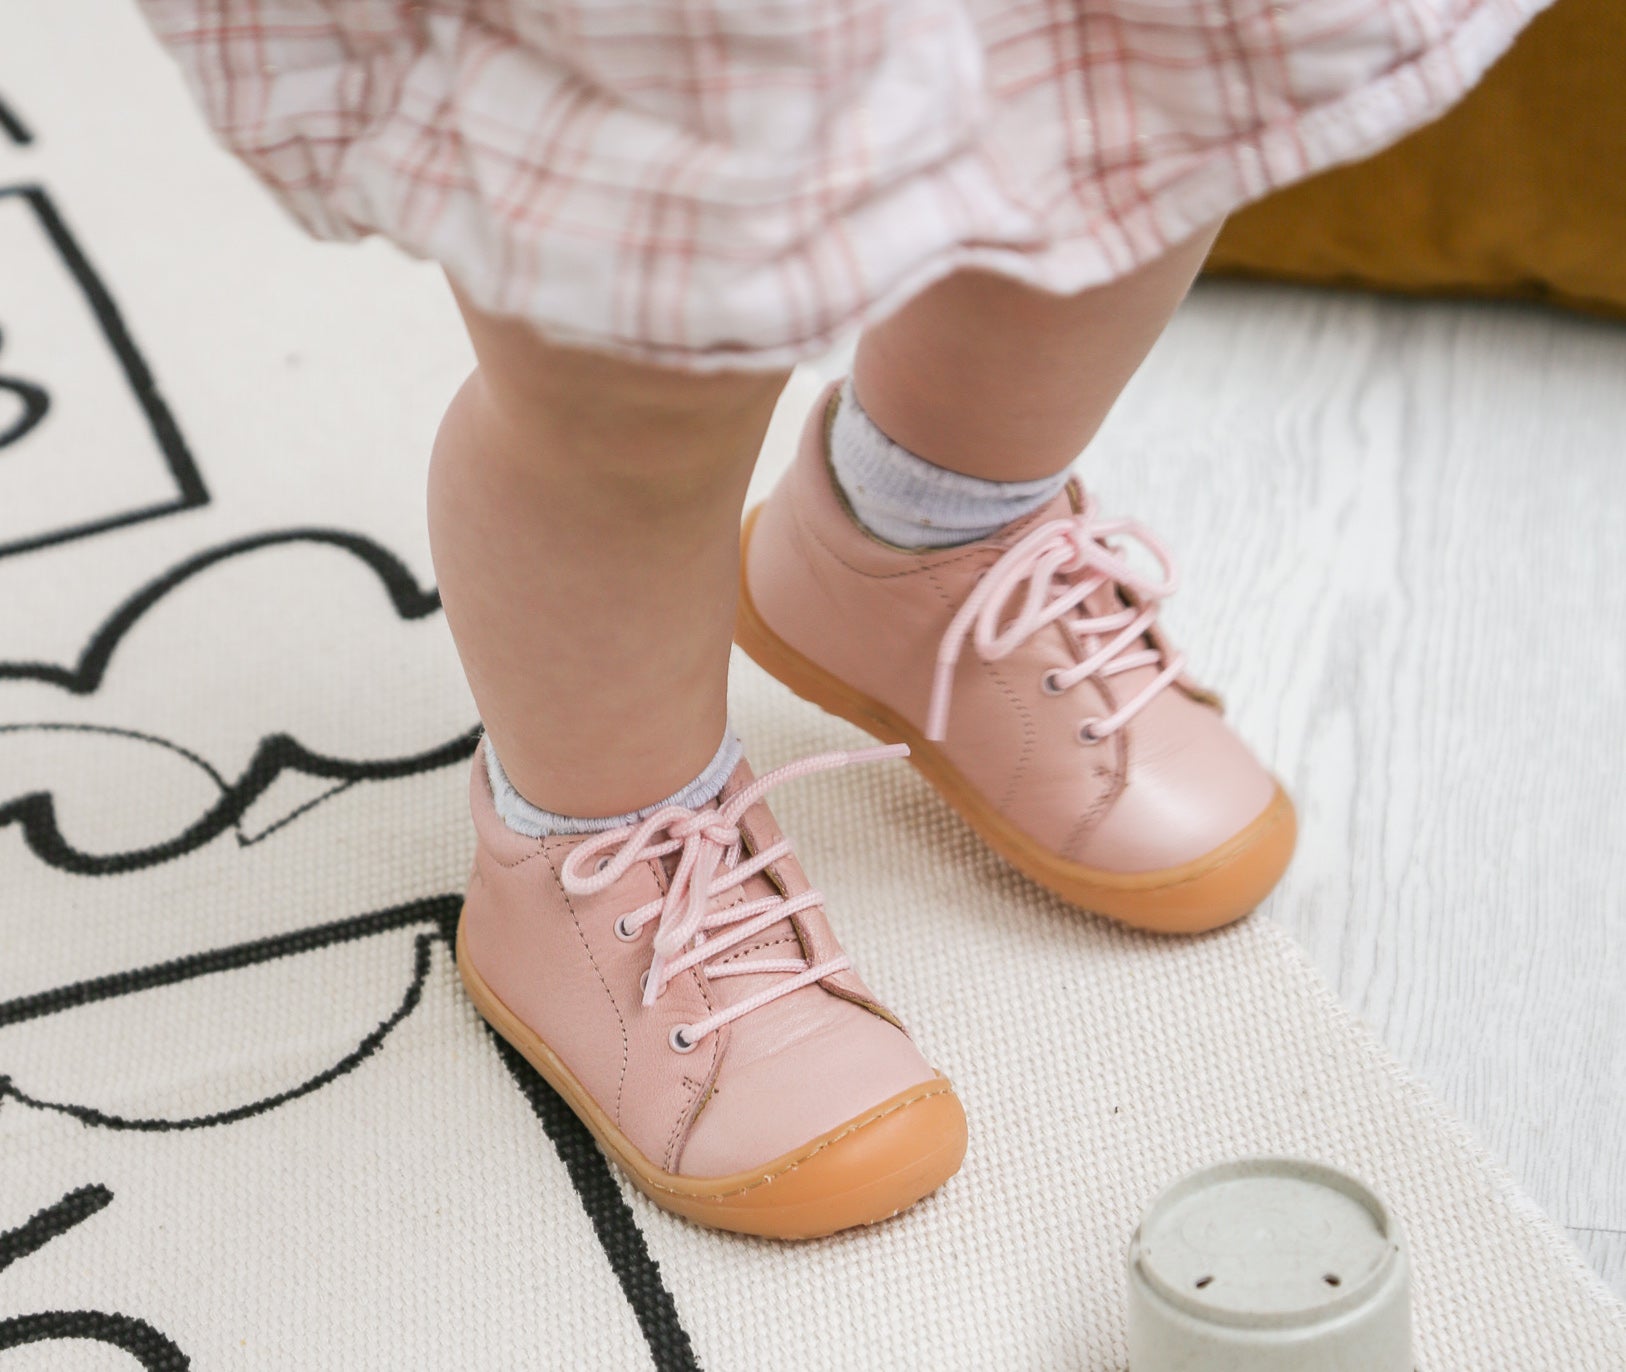 Quand les premières chaussures pour bébé?